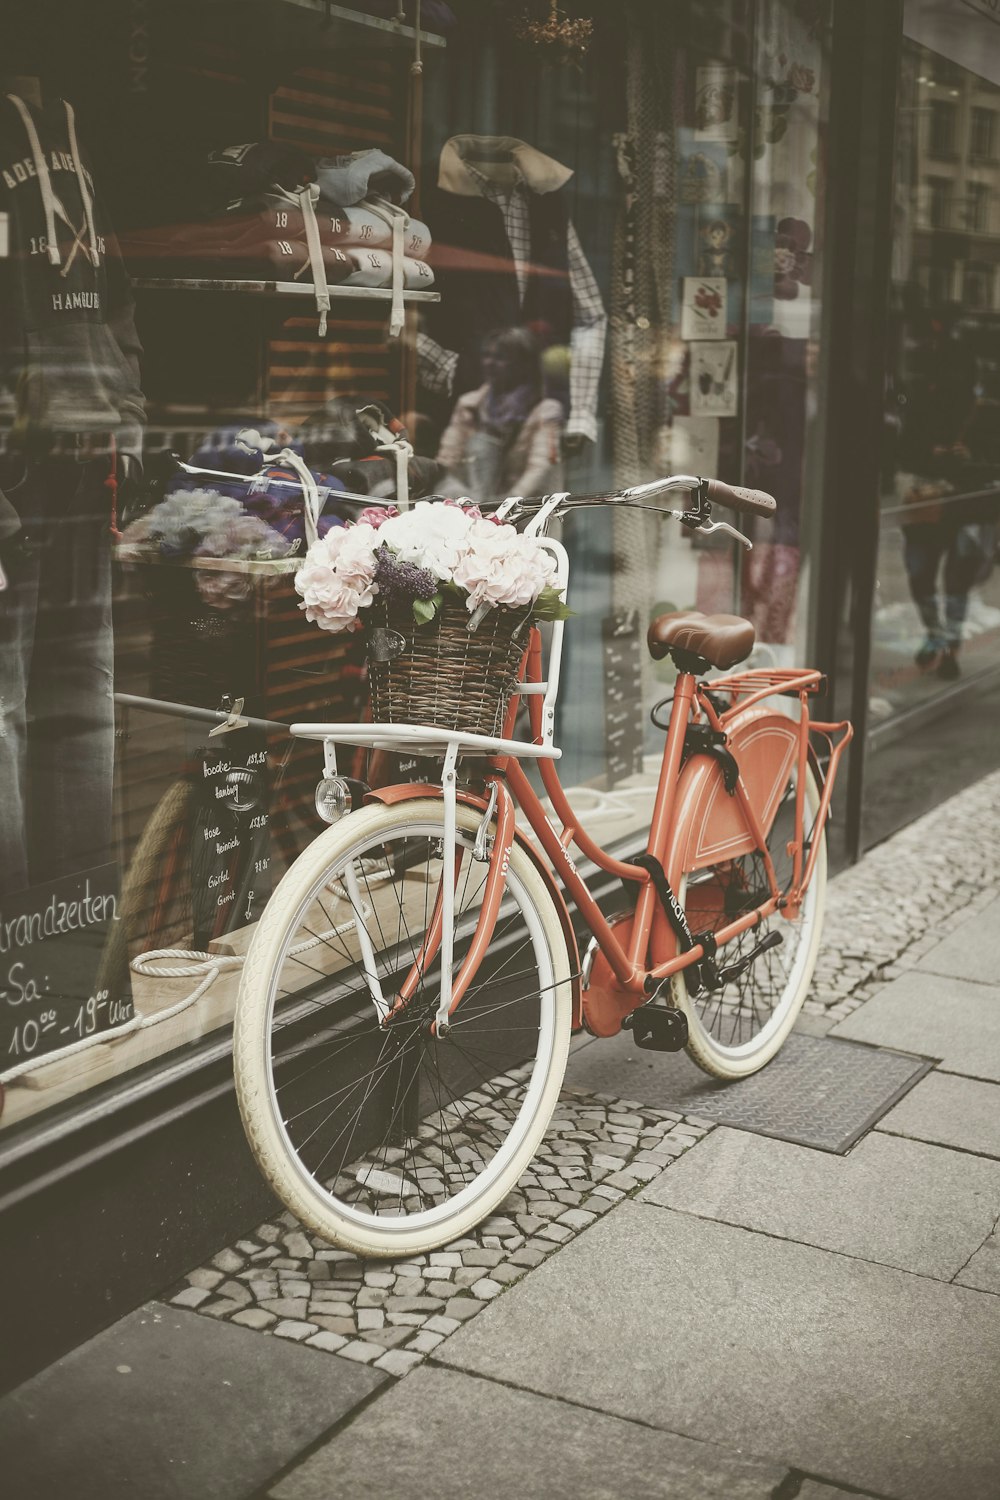 Roter Schritt durch Fahrrad auf Glaswand geparkt